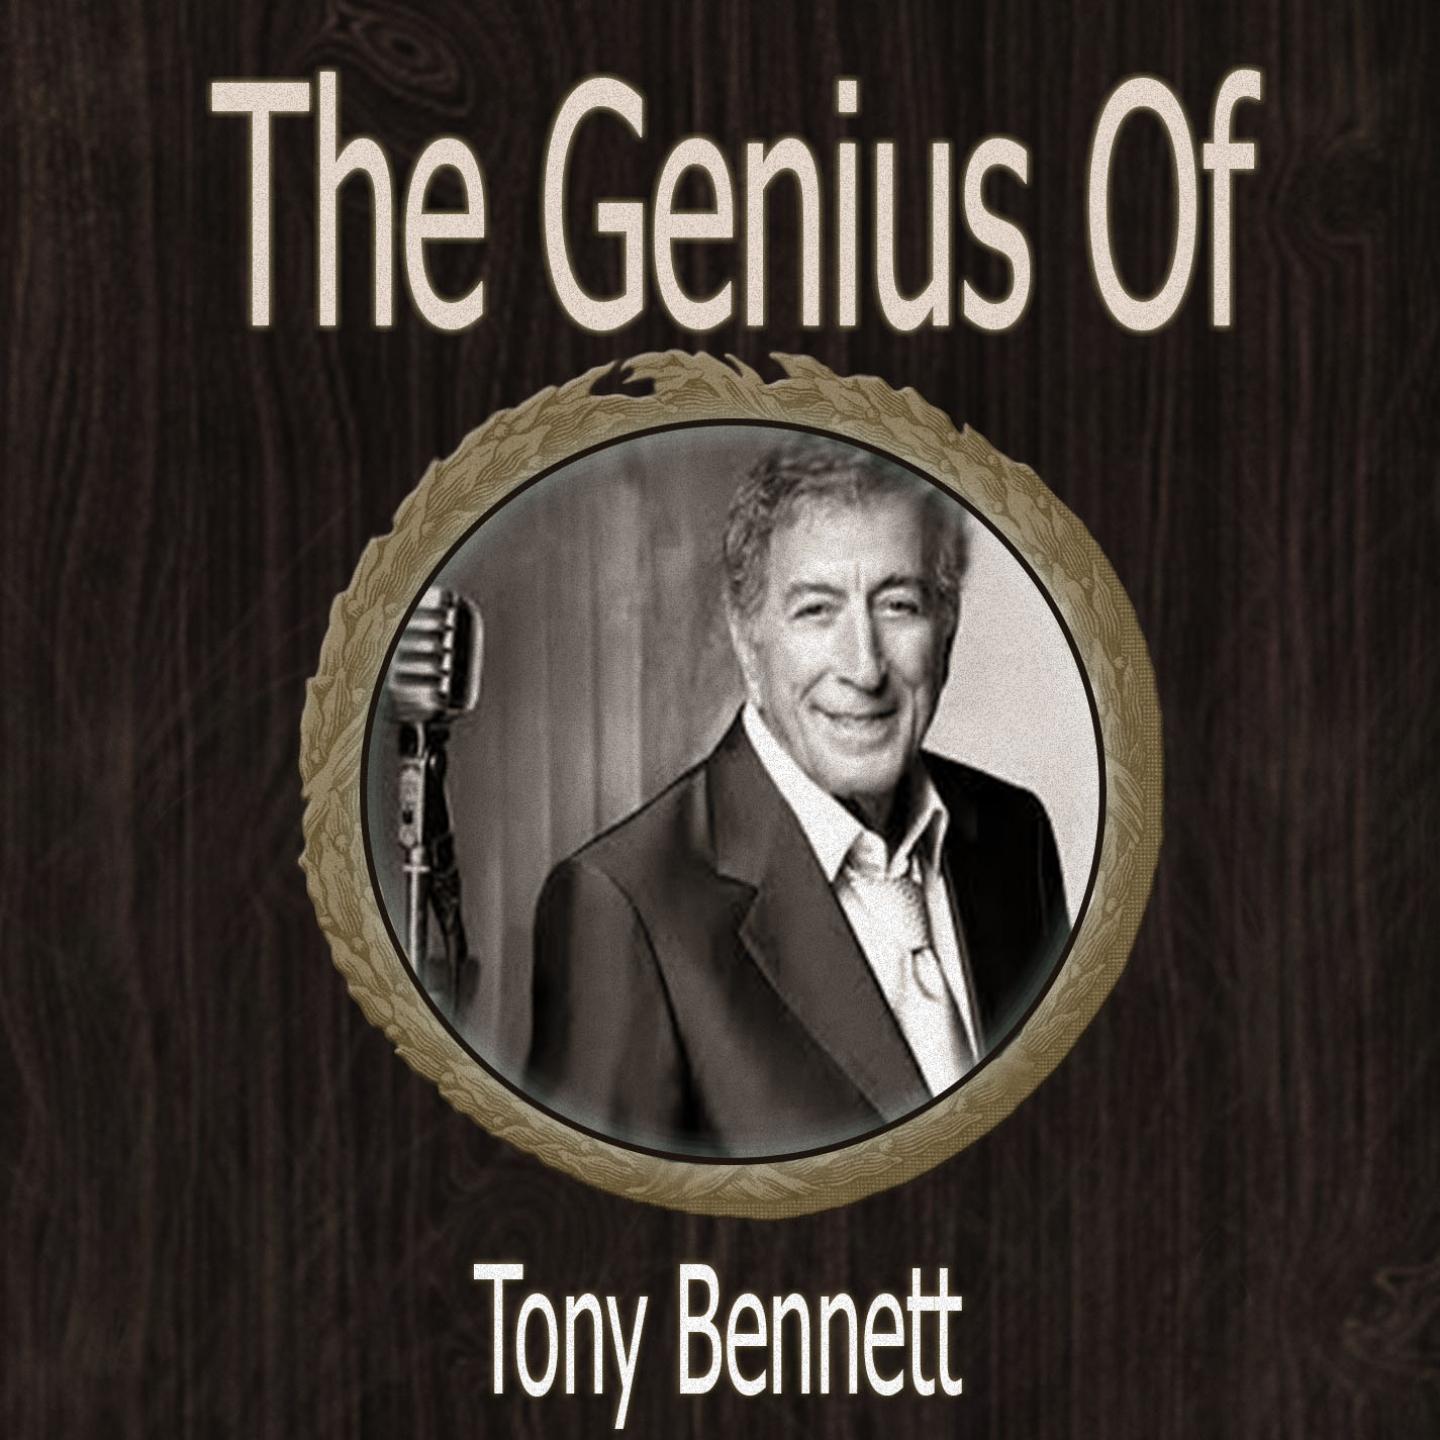 The Genius of Tony Bennett